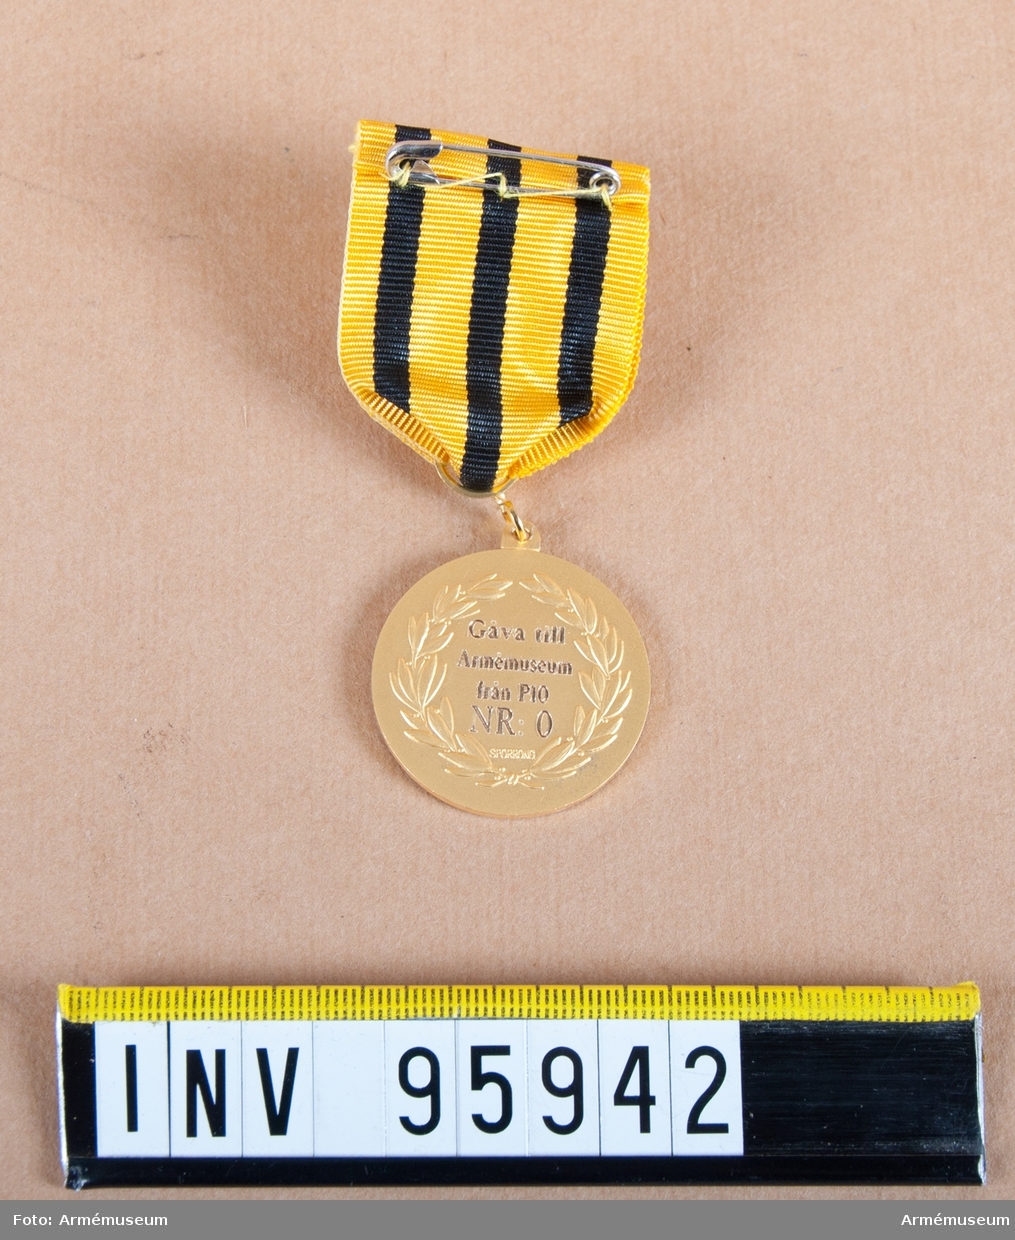 Södermanlands regementes (P 10) förtjänstmedalj i guld, före 2000 Södermanlands försvarsområdes (Fo 43), 8:e storleken.

Band: gult med tre jämt fördelade svarta ränder.

Medalj i blå ask klädd med blå sammet och vit siden.